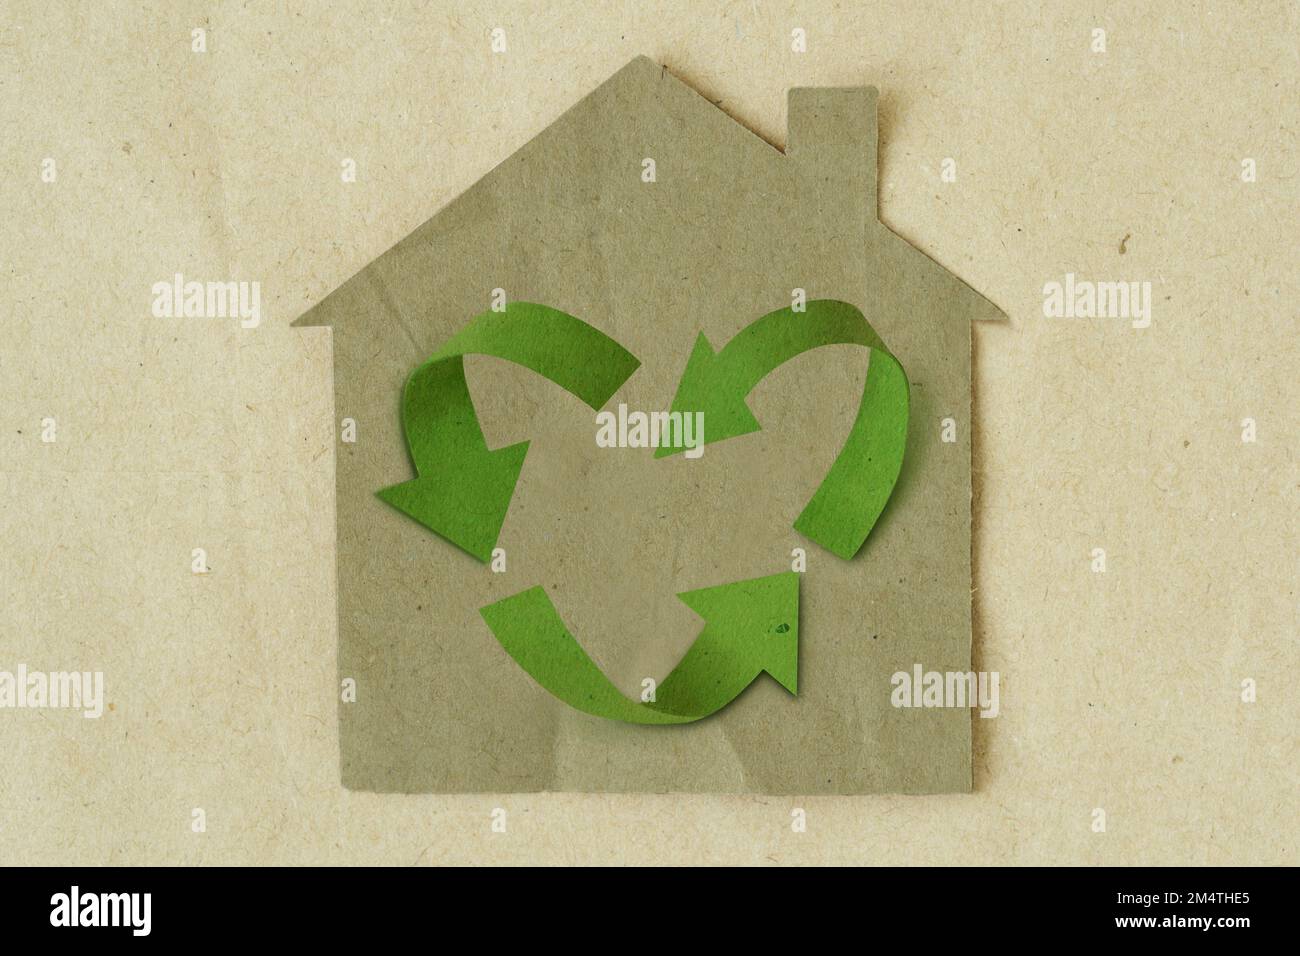 Carta tagliata di casa con il simbolo di riciclaggio a forma di cuore su sfondo di carta riciclata - concetto di casa ed ecologia Foto Stock